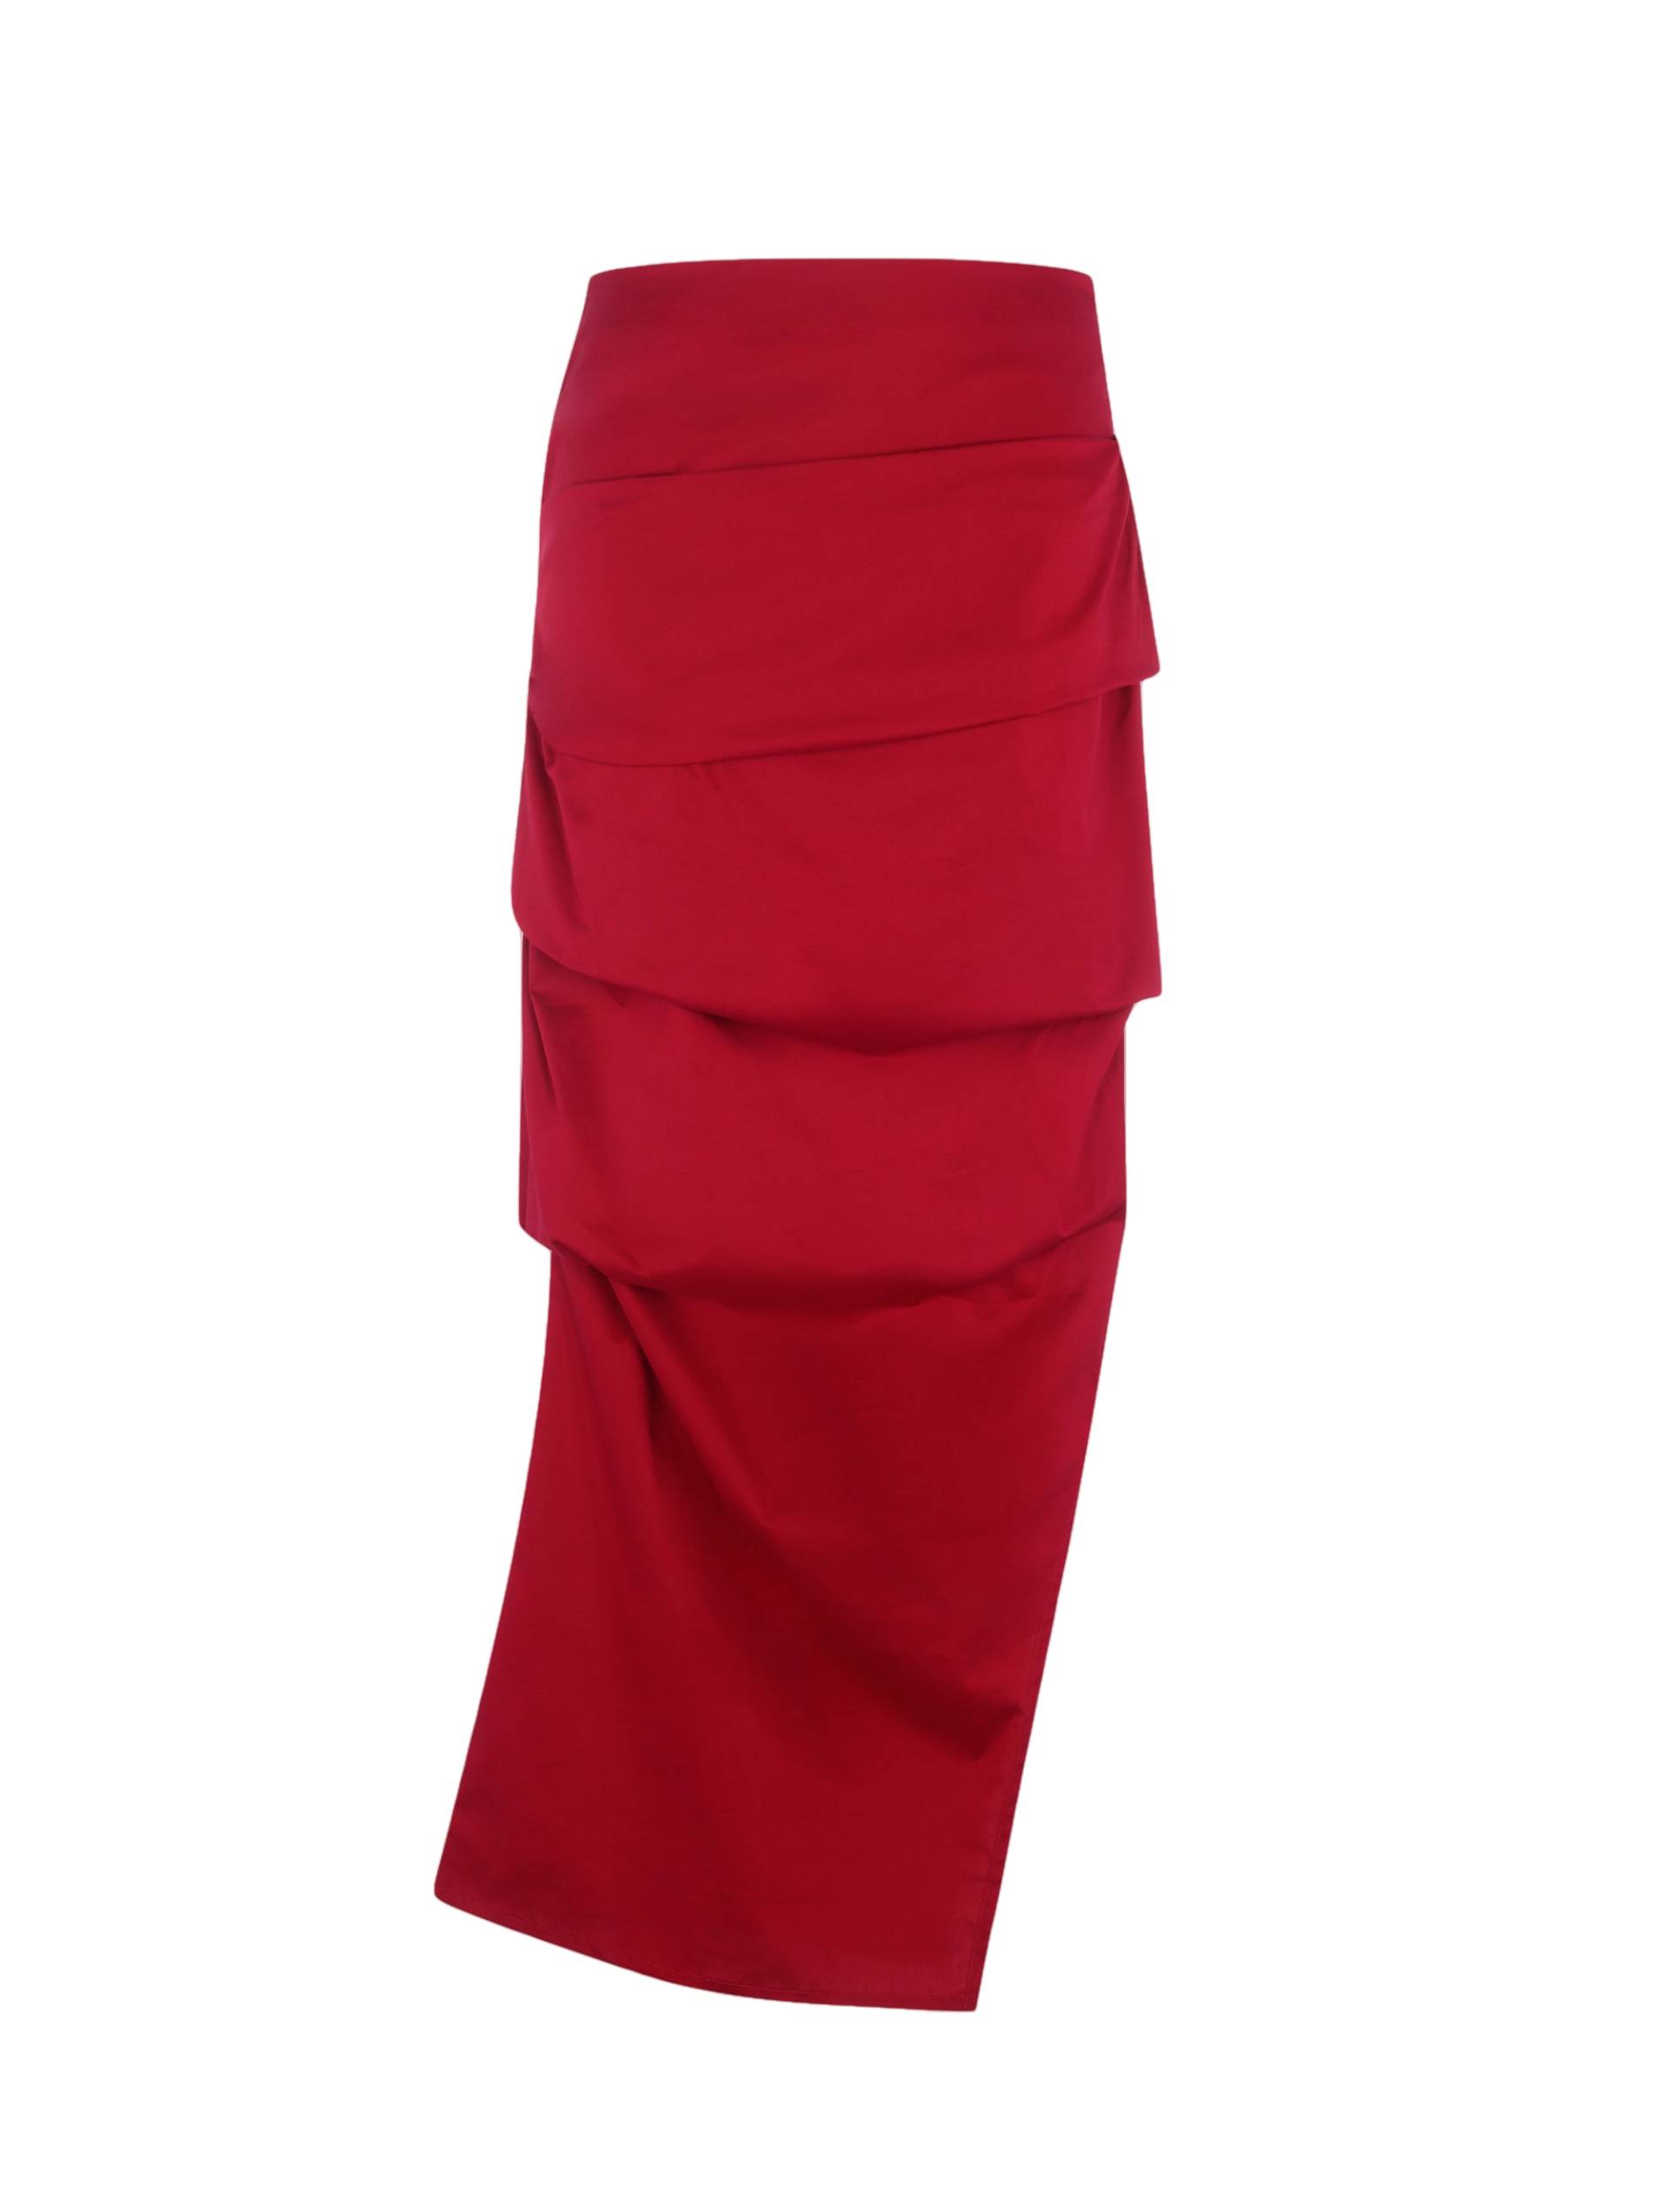 Alba Skirt - Red von Peregrina